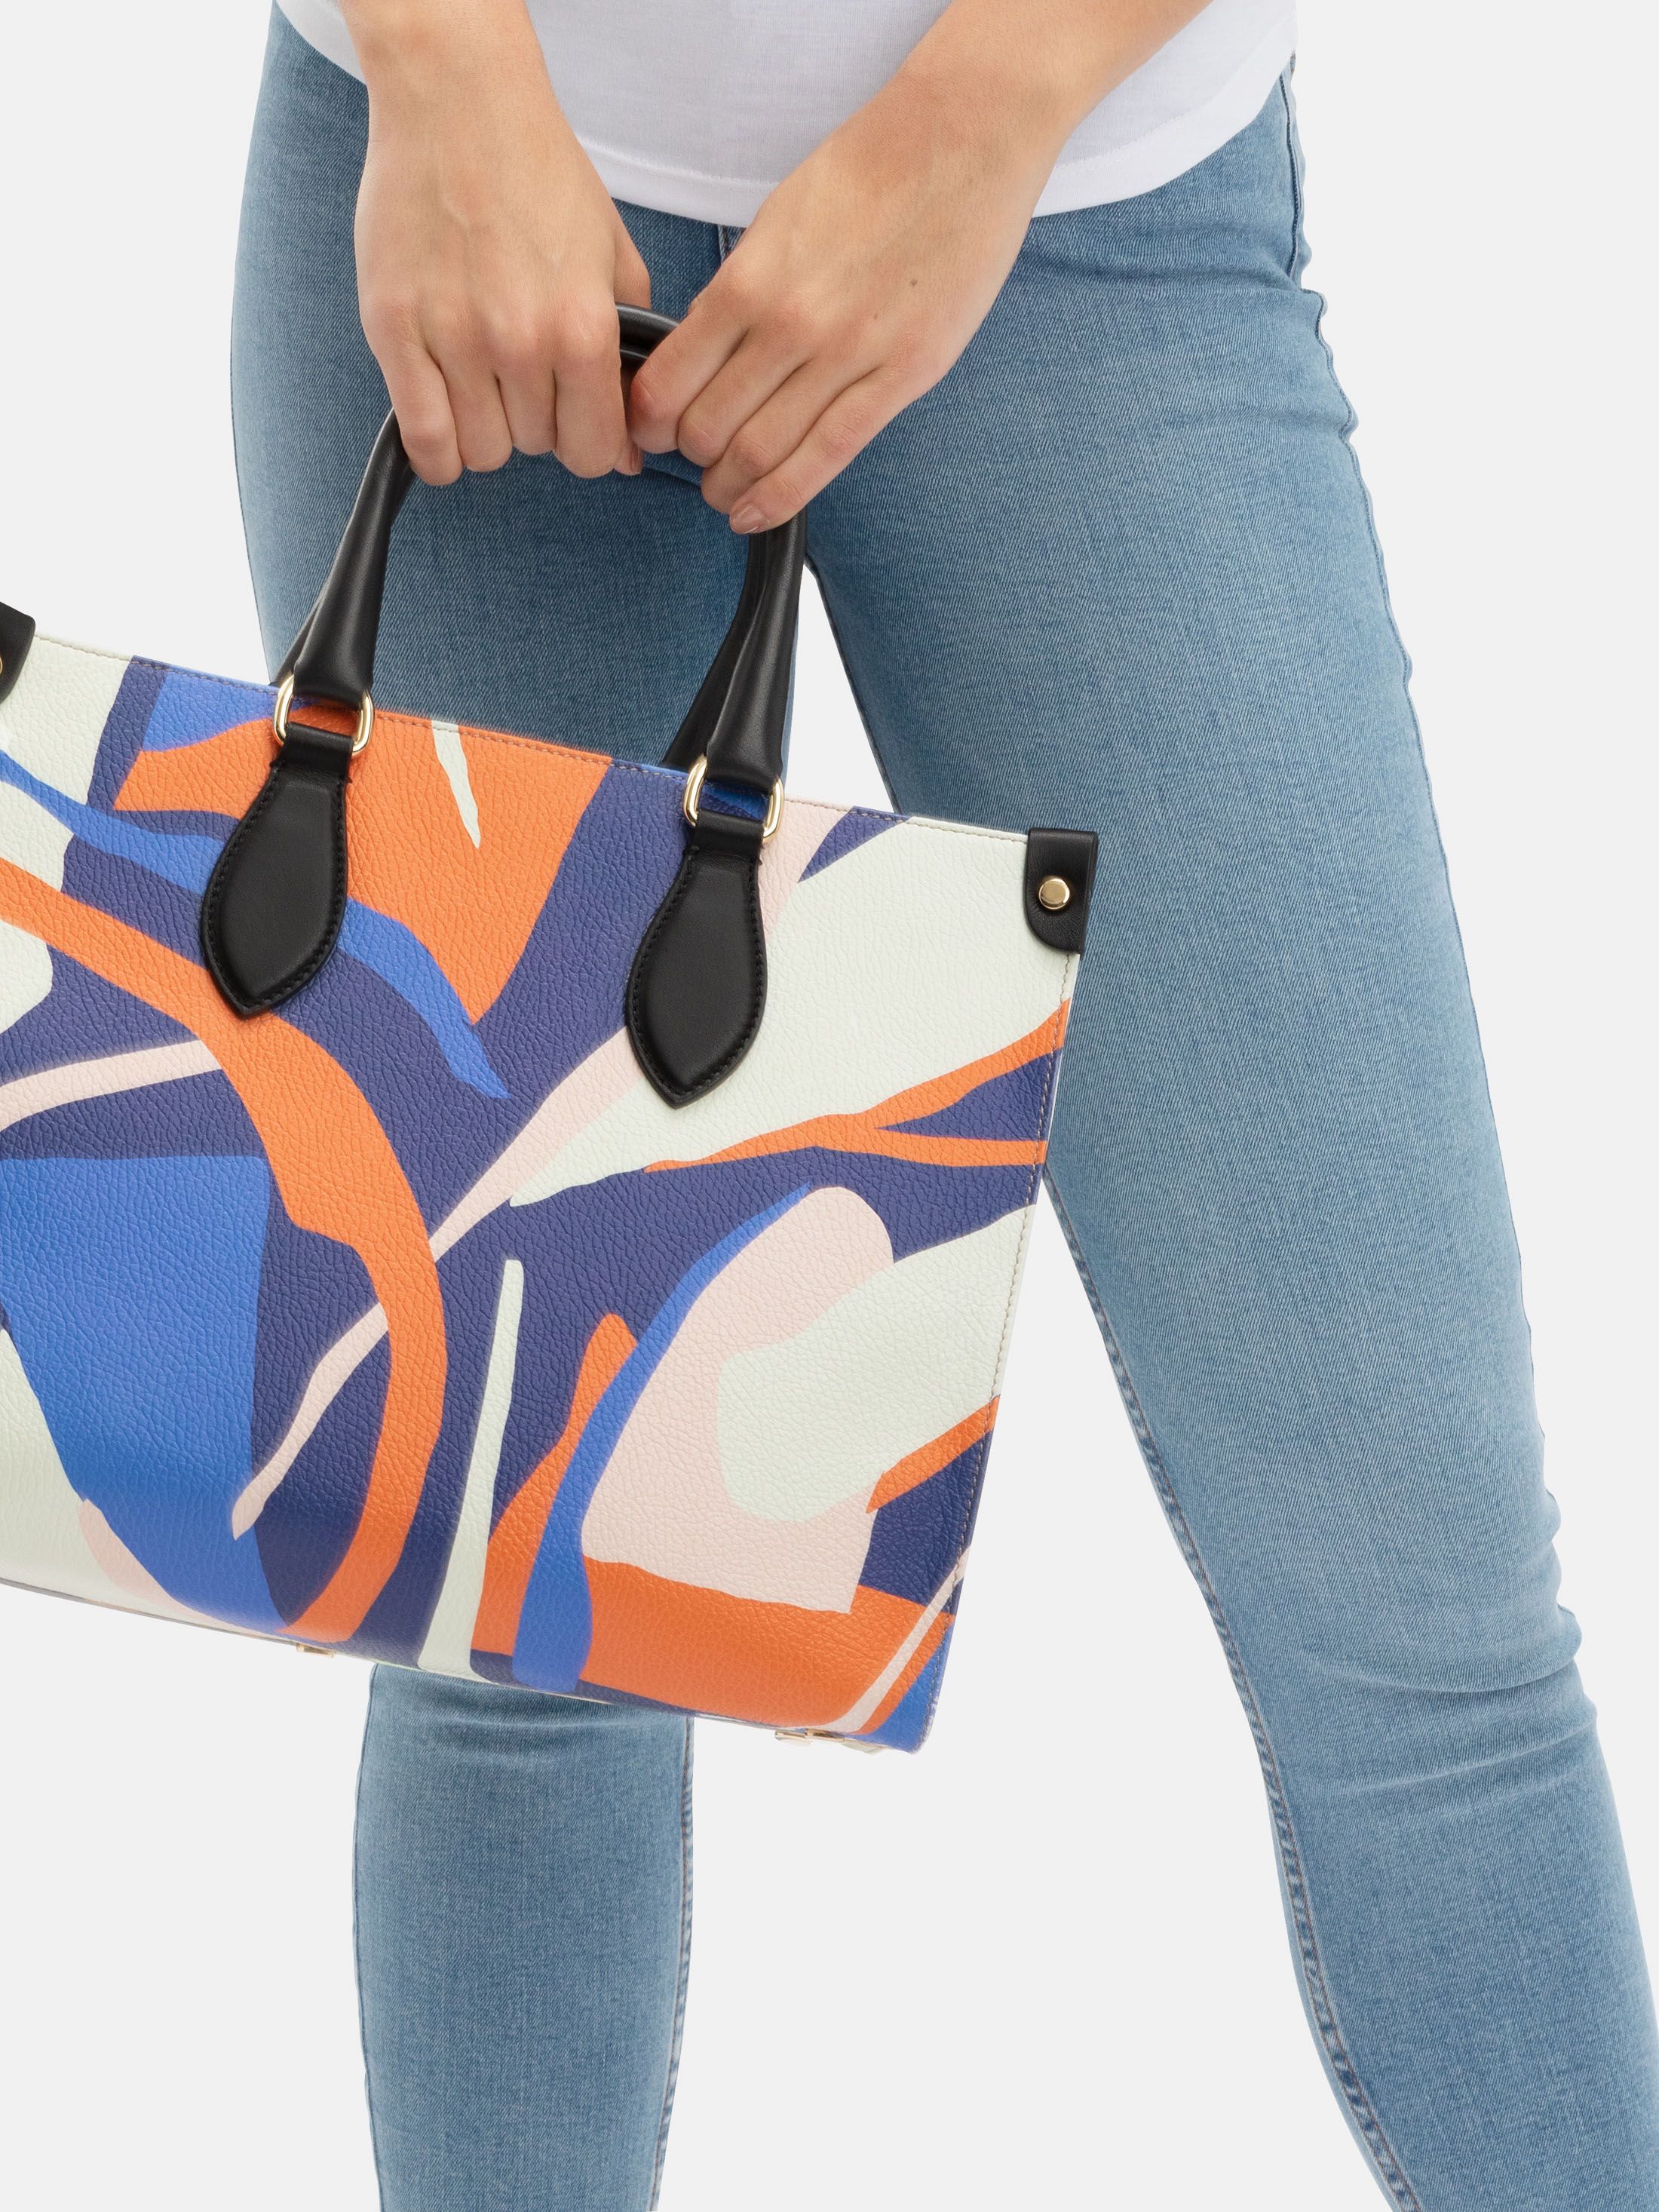 design your own shopper bag uk